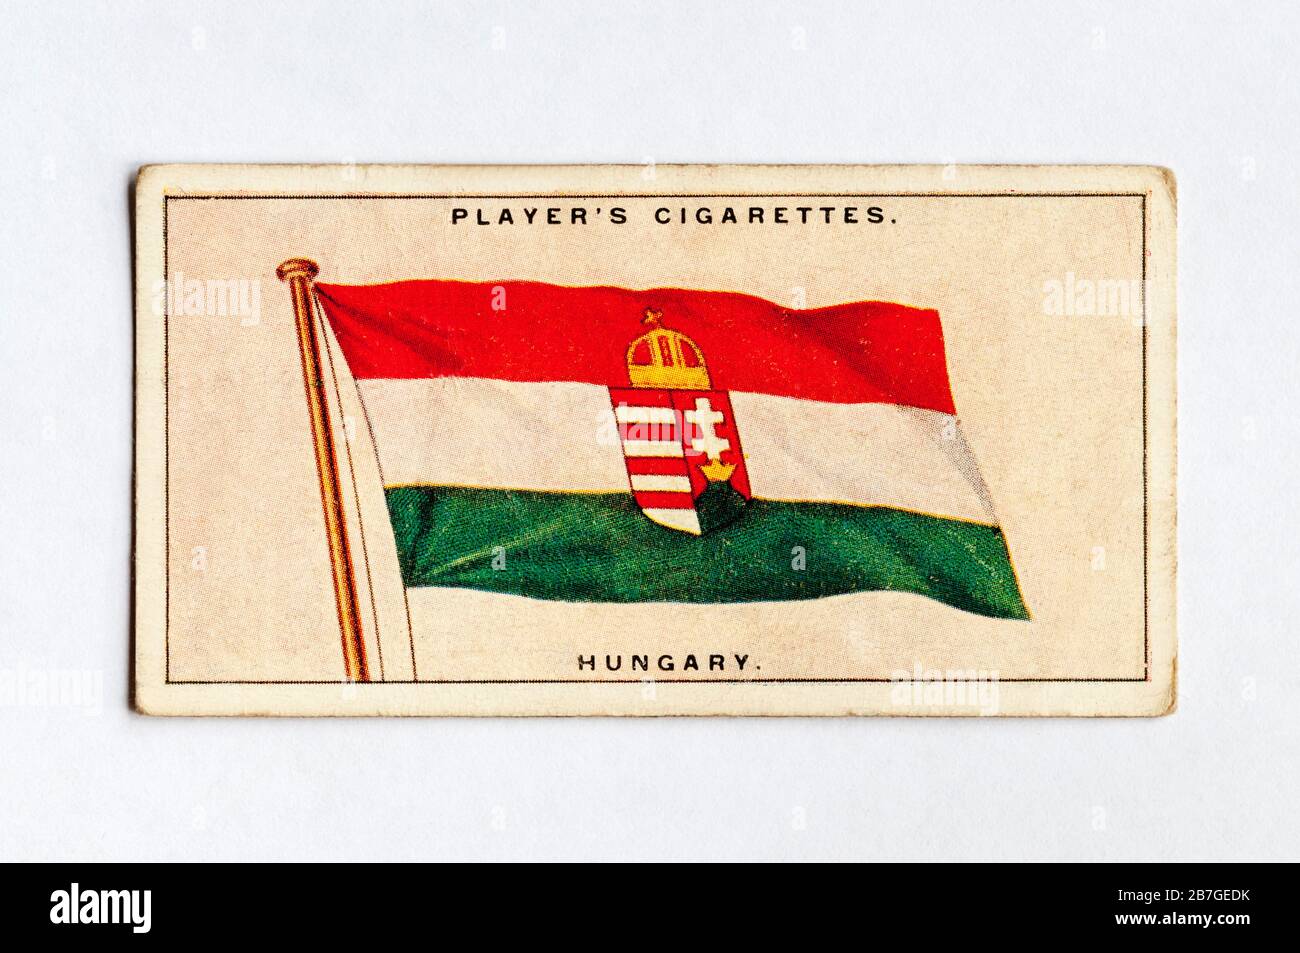 La carta delle sigarette del giocatore nella serie Flags of the League of Nations mostra la bandiera dell'Ungheria. Pubblicato 1928. Foto Stock